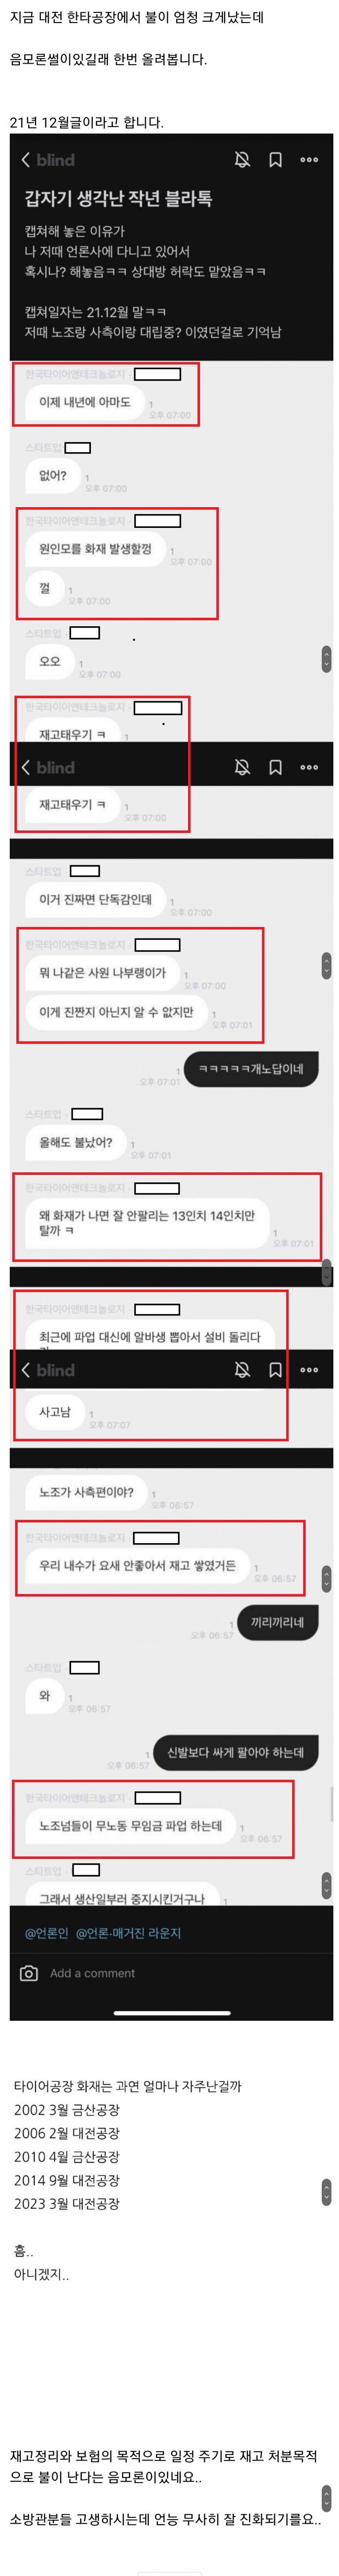 대전 한국타이어 화재 2년 전 예견한 블라인드 게시물 '방화 음모론' 급속도로 확산되는 이유 (캡처)  